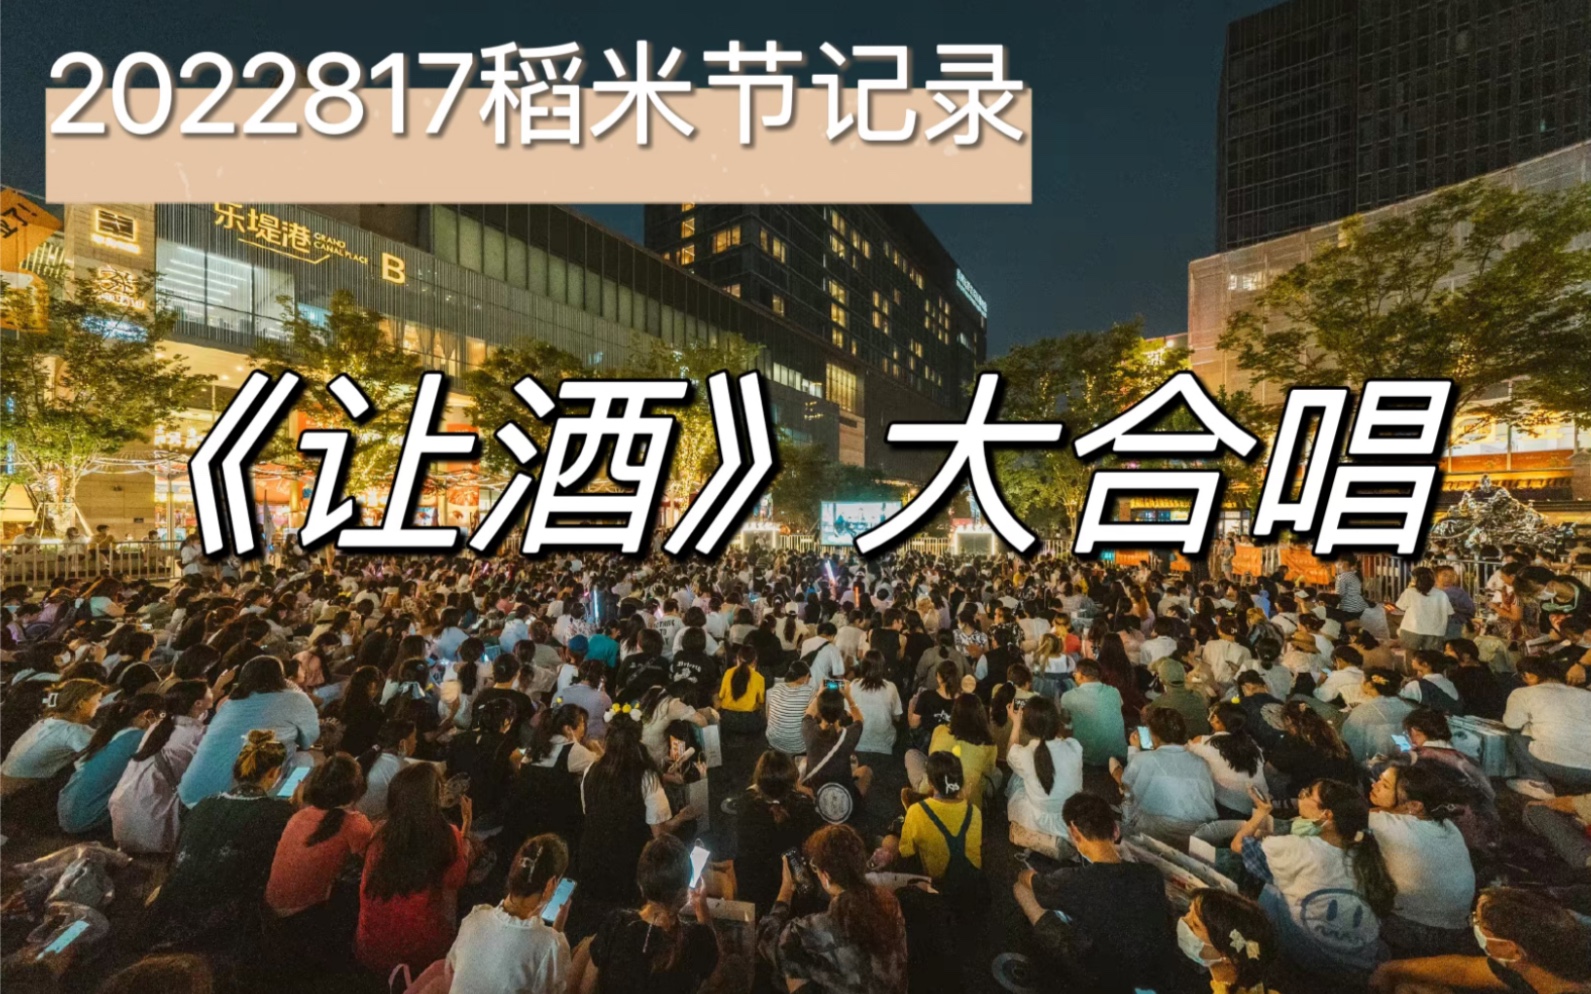 盗墓笔记2022817稻米节大合唱现场氛围超棒版，没来的家人看这里